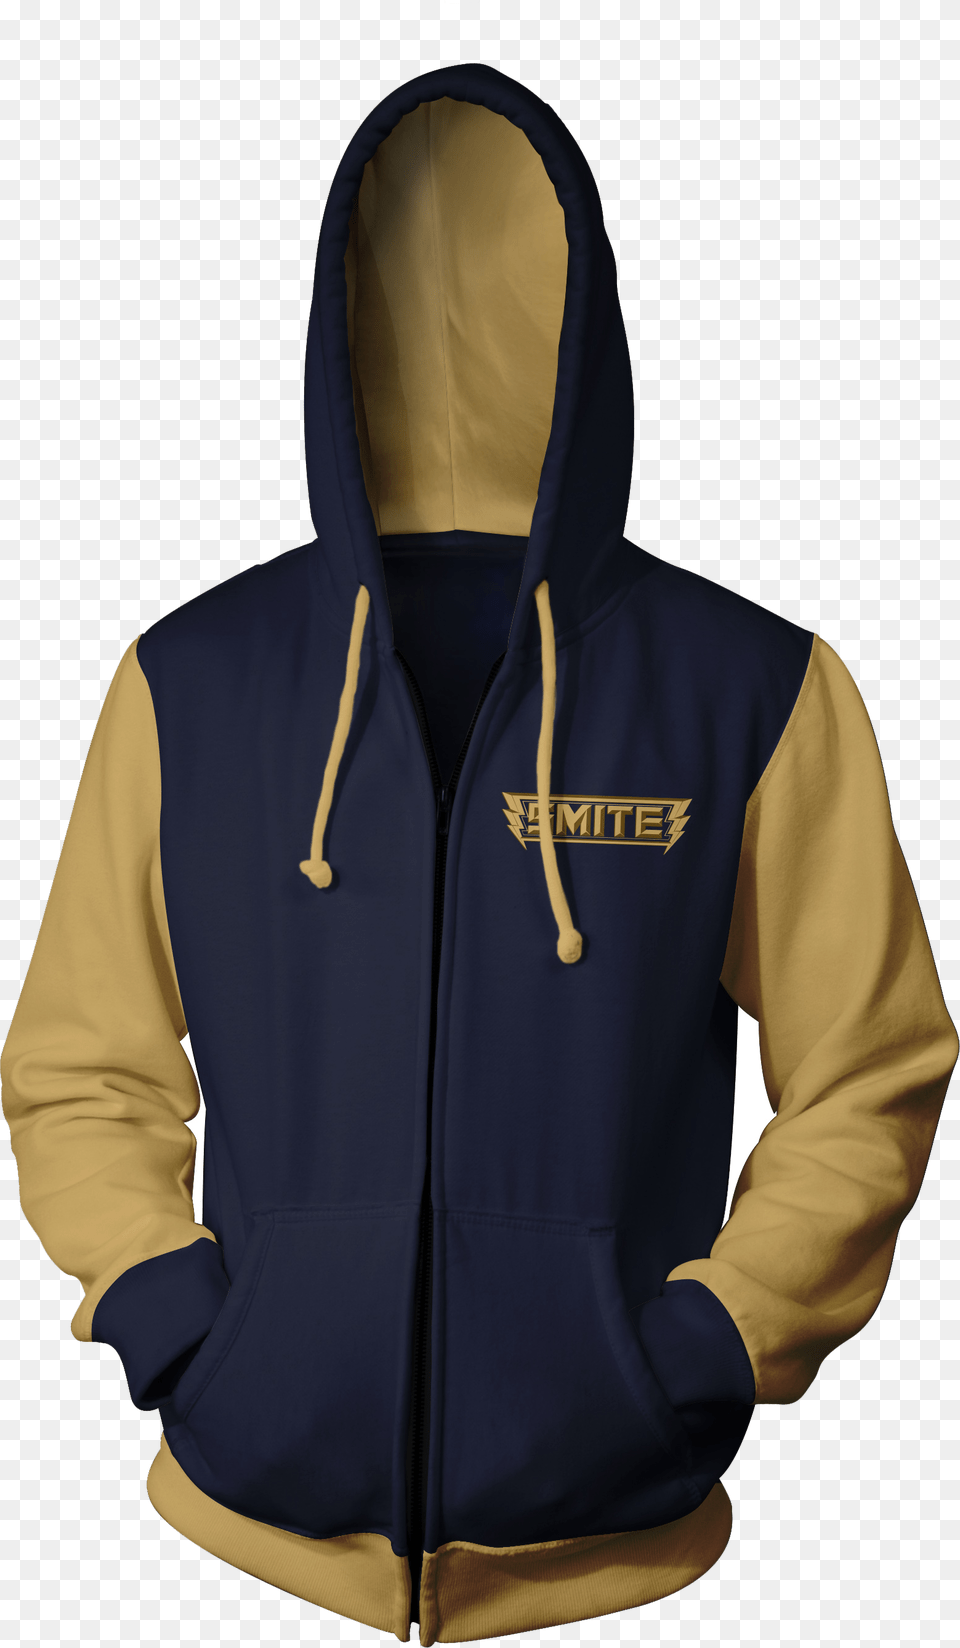 Smite Dual Tone Hoodie, Clothing, Coat, Hood, Jacket Png Image